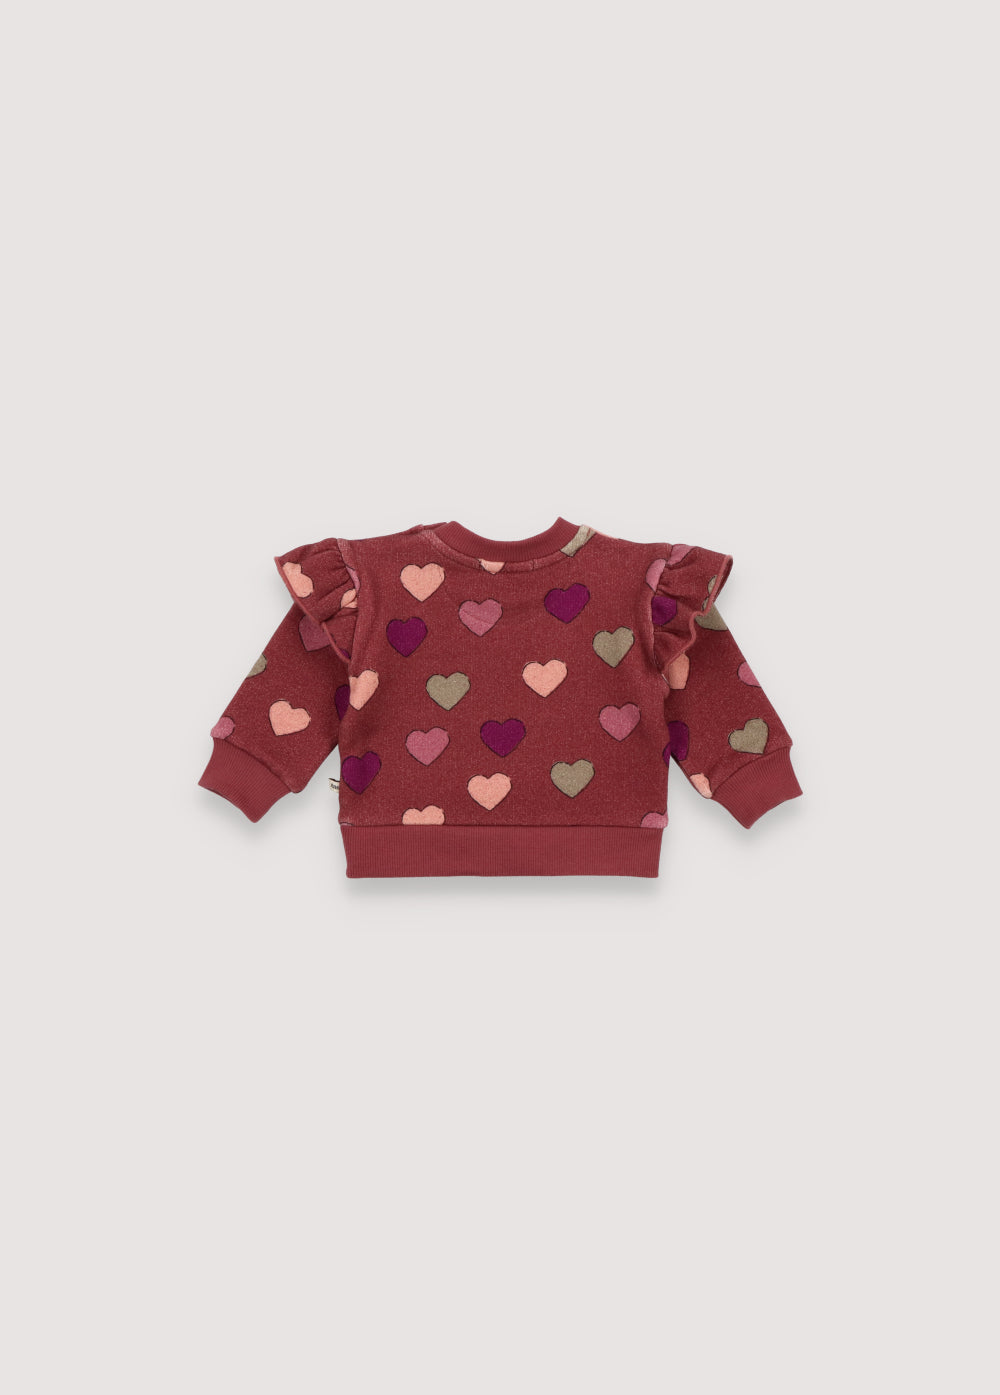 Christy Baby Sweatshirt Hearts